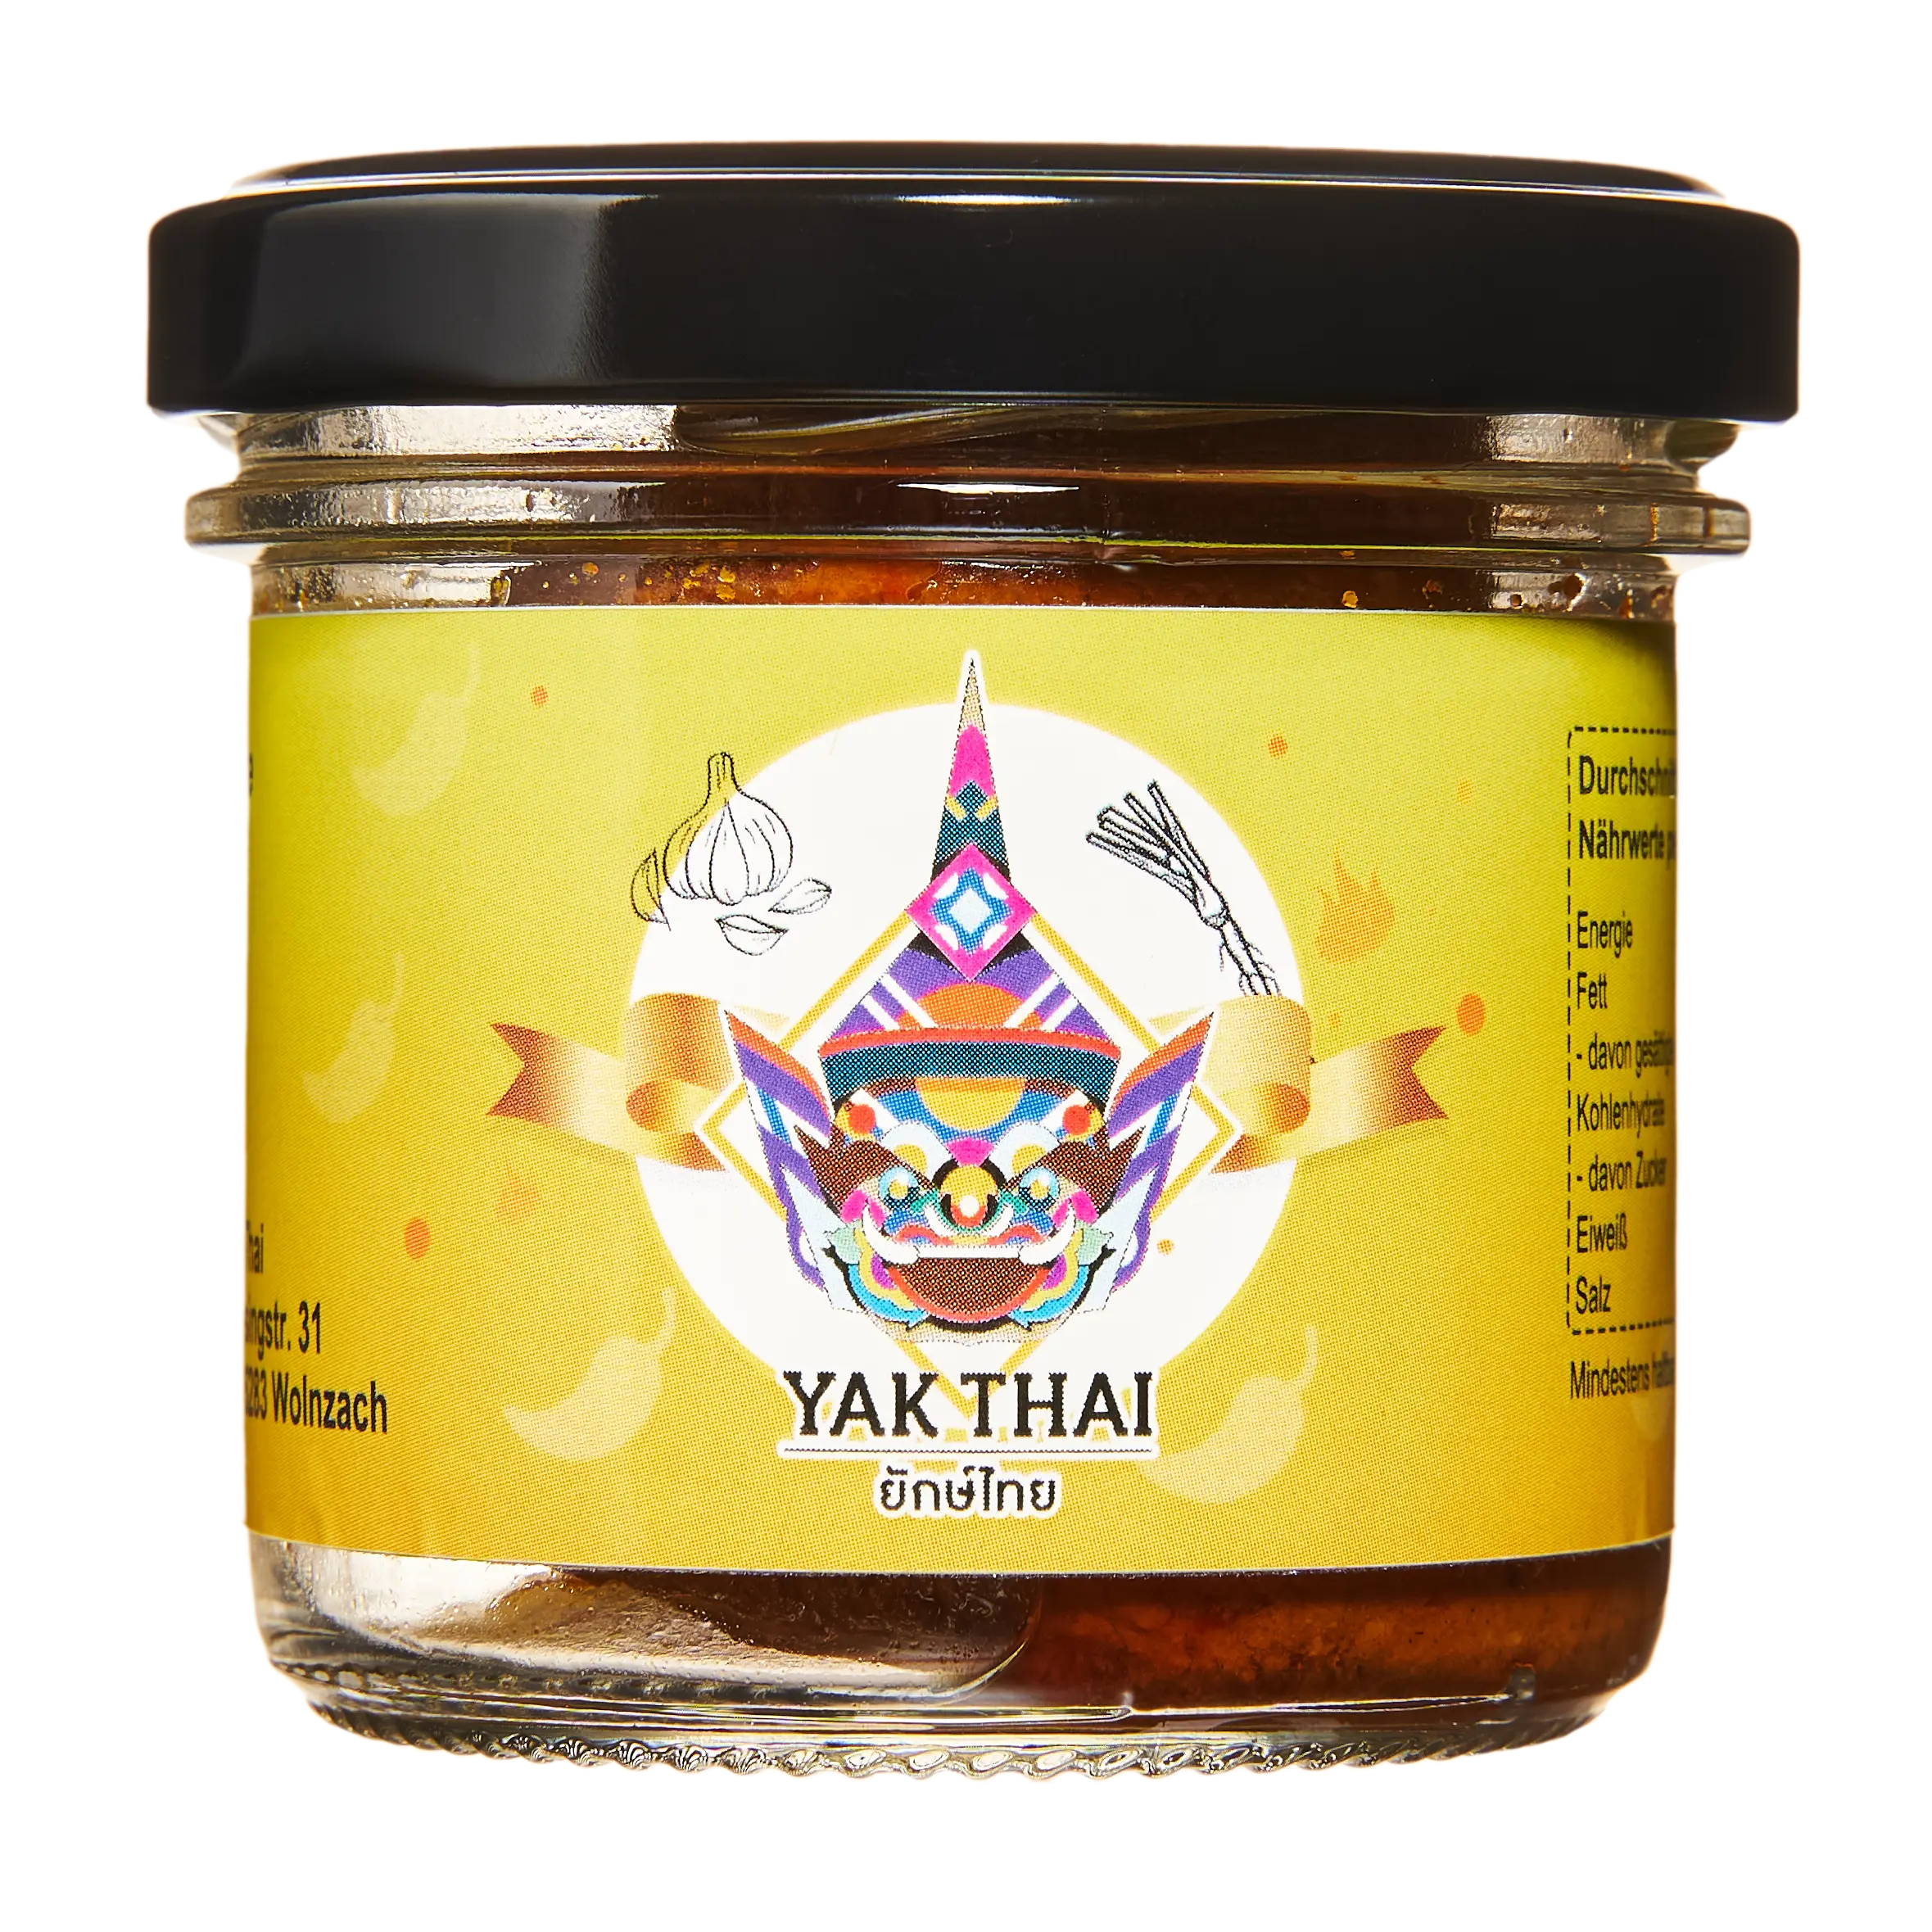 Yak Thai Khao Soi Currypaste - Gaeng Khao Soi